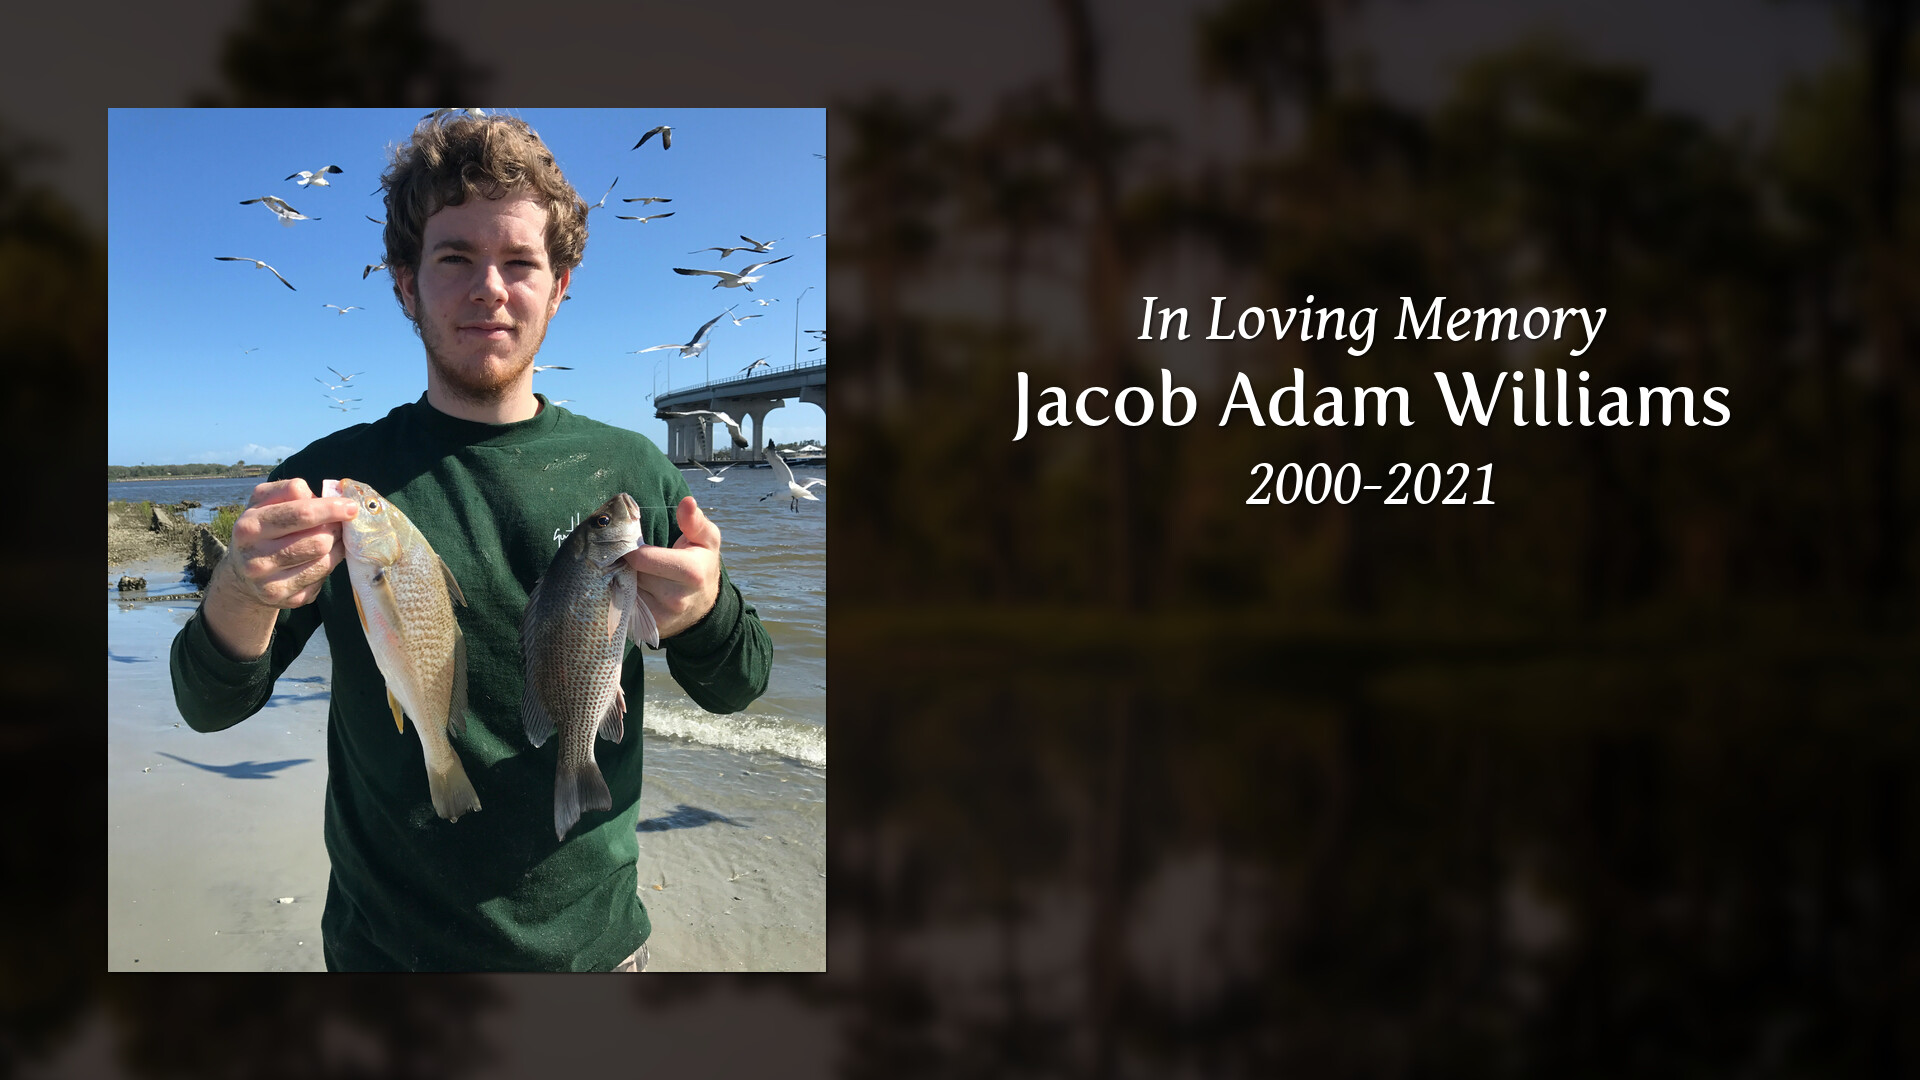 Jacob Adam Williams Tribute Video